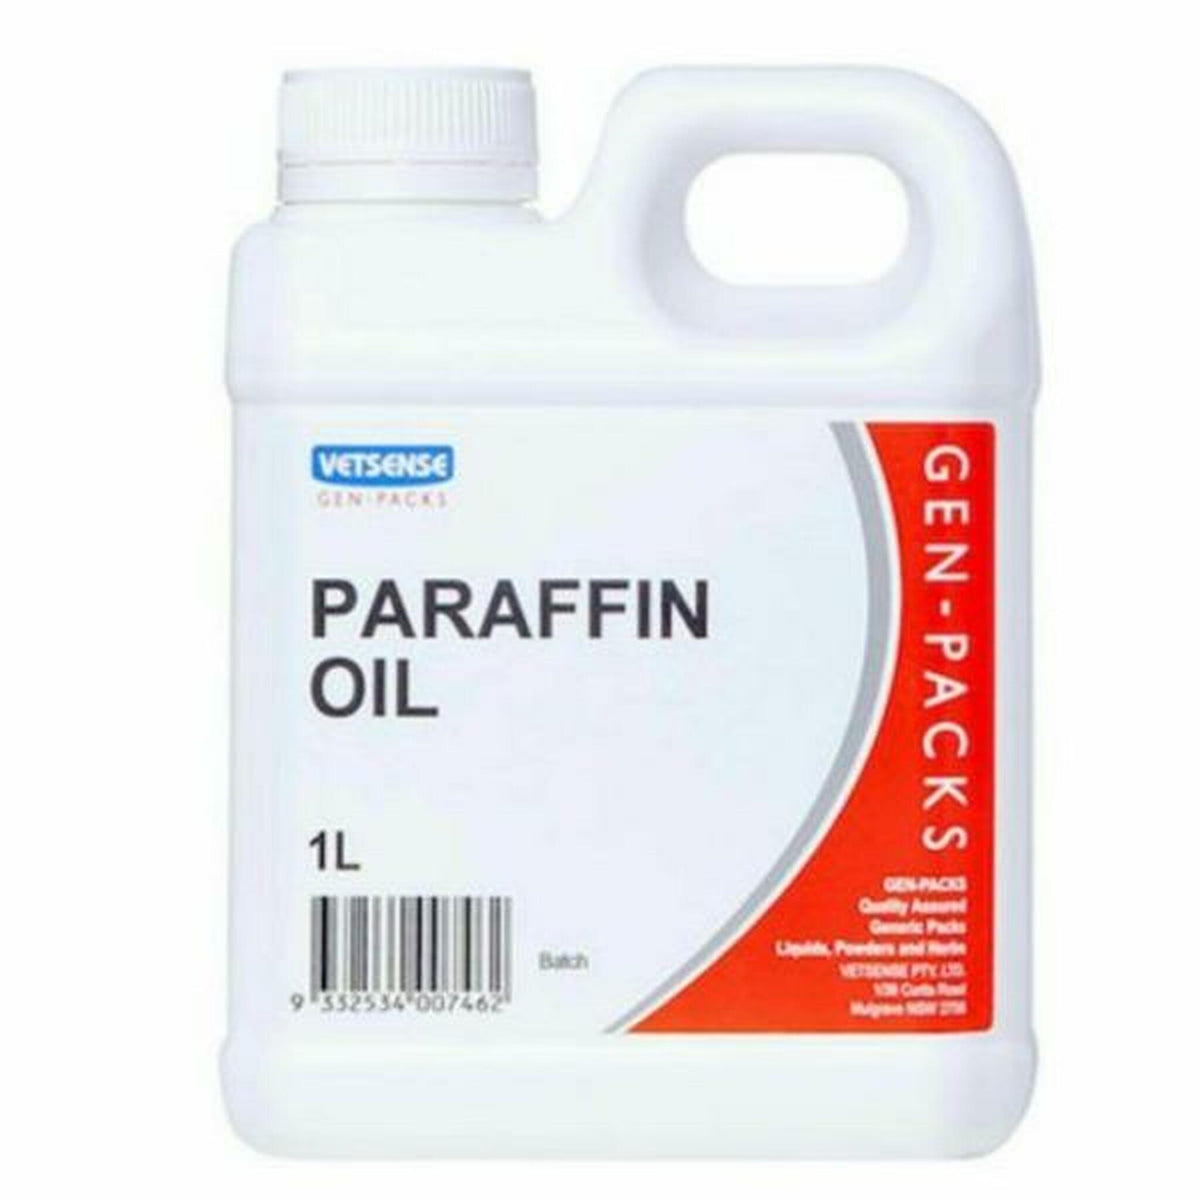 PARAFFIN OIL